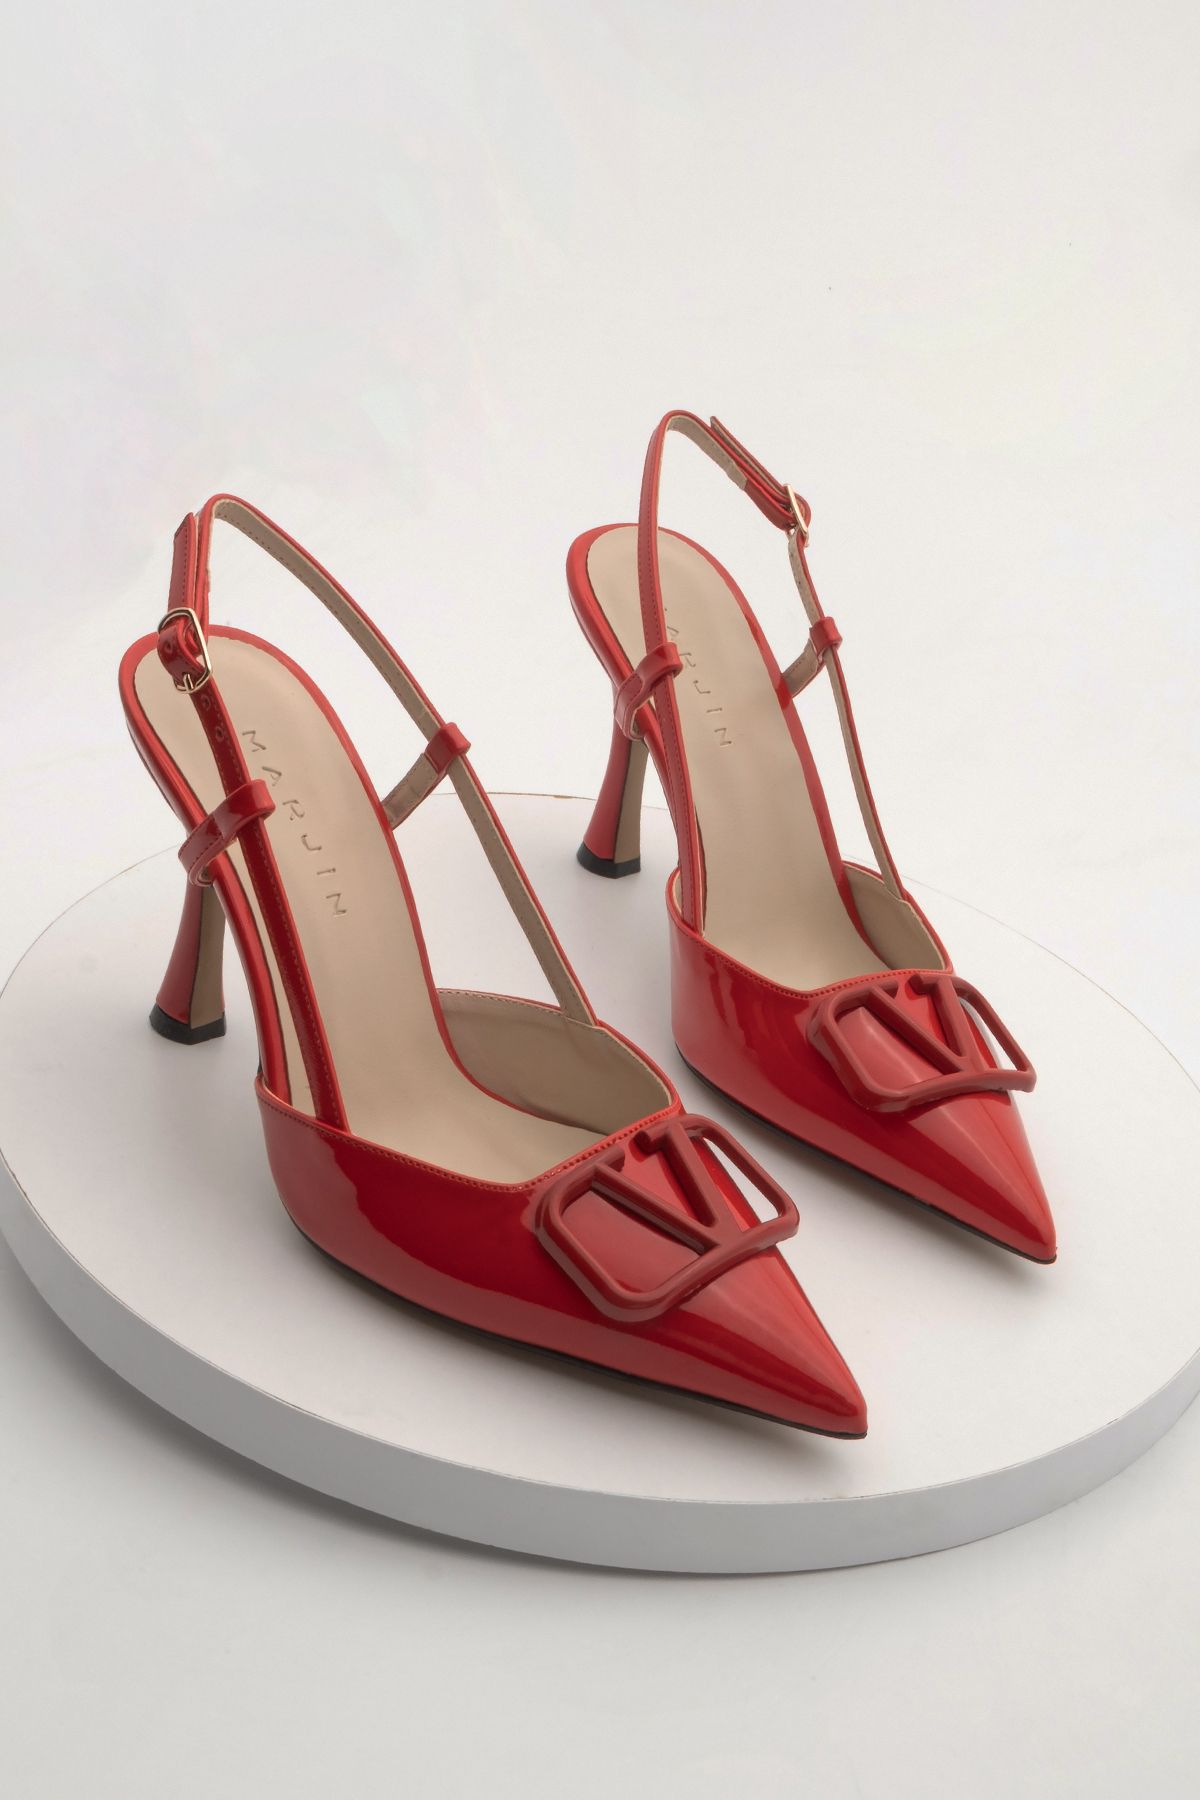 Marjin Kadın Stiletto Sivri Burun Topuklu Ayakkabı Pidar Kırmızı Rugan